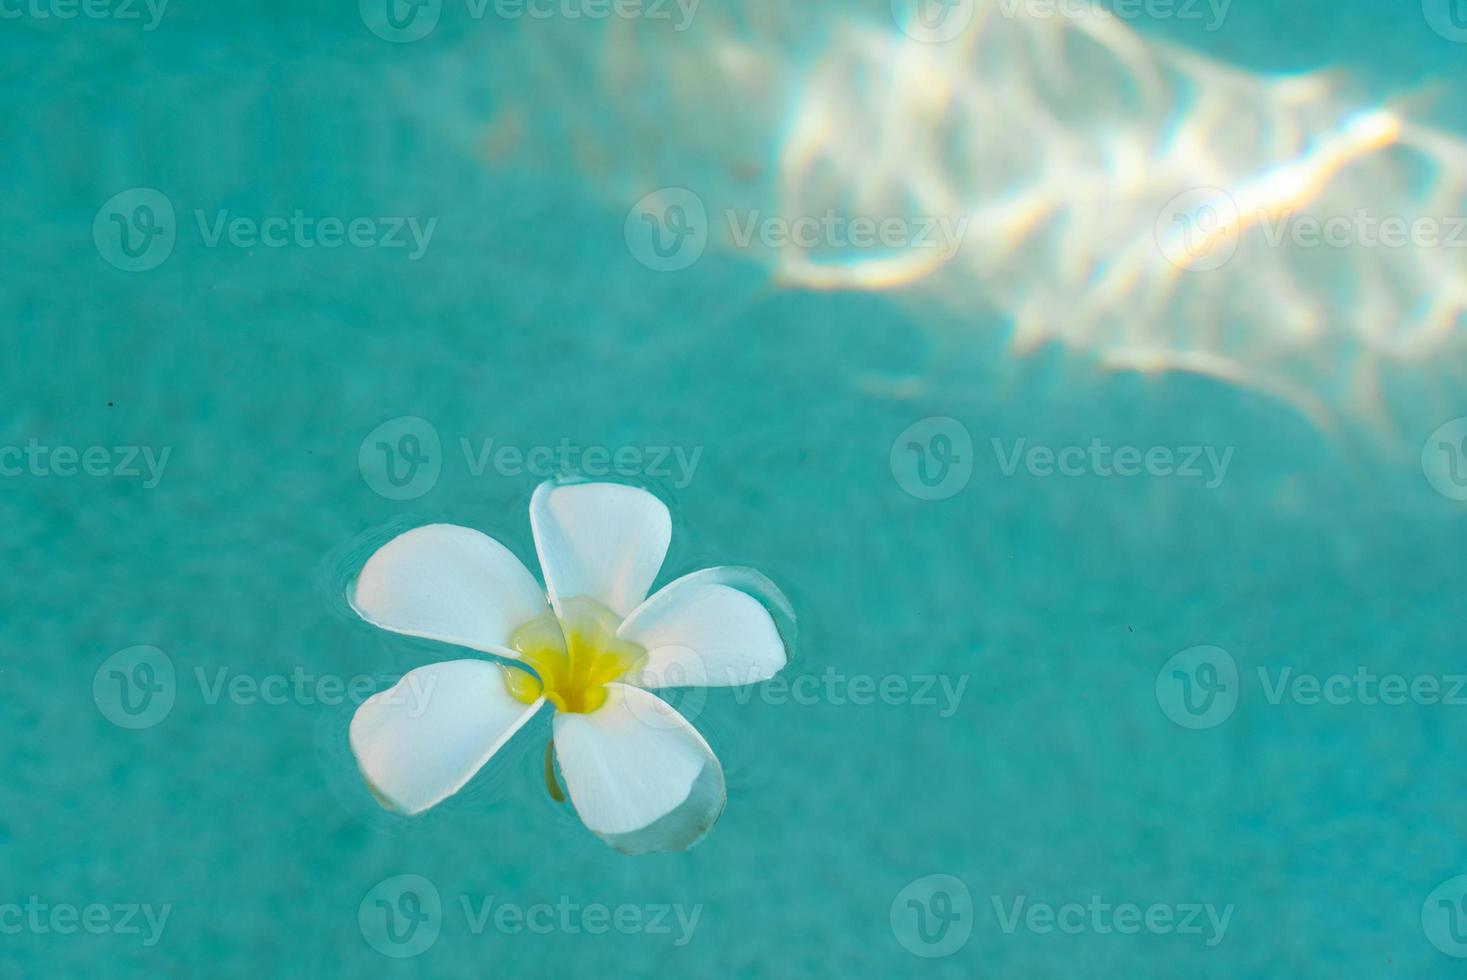 flor de frangipani blanca flotando en la superficie de la piscina foto